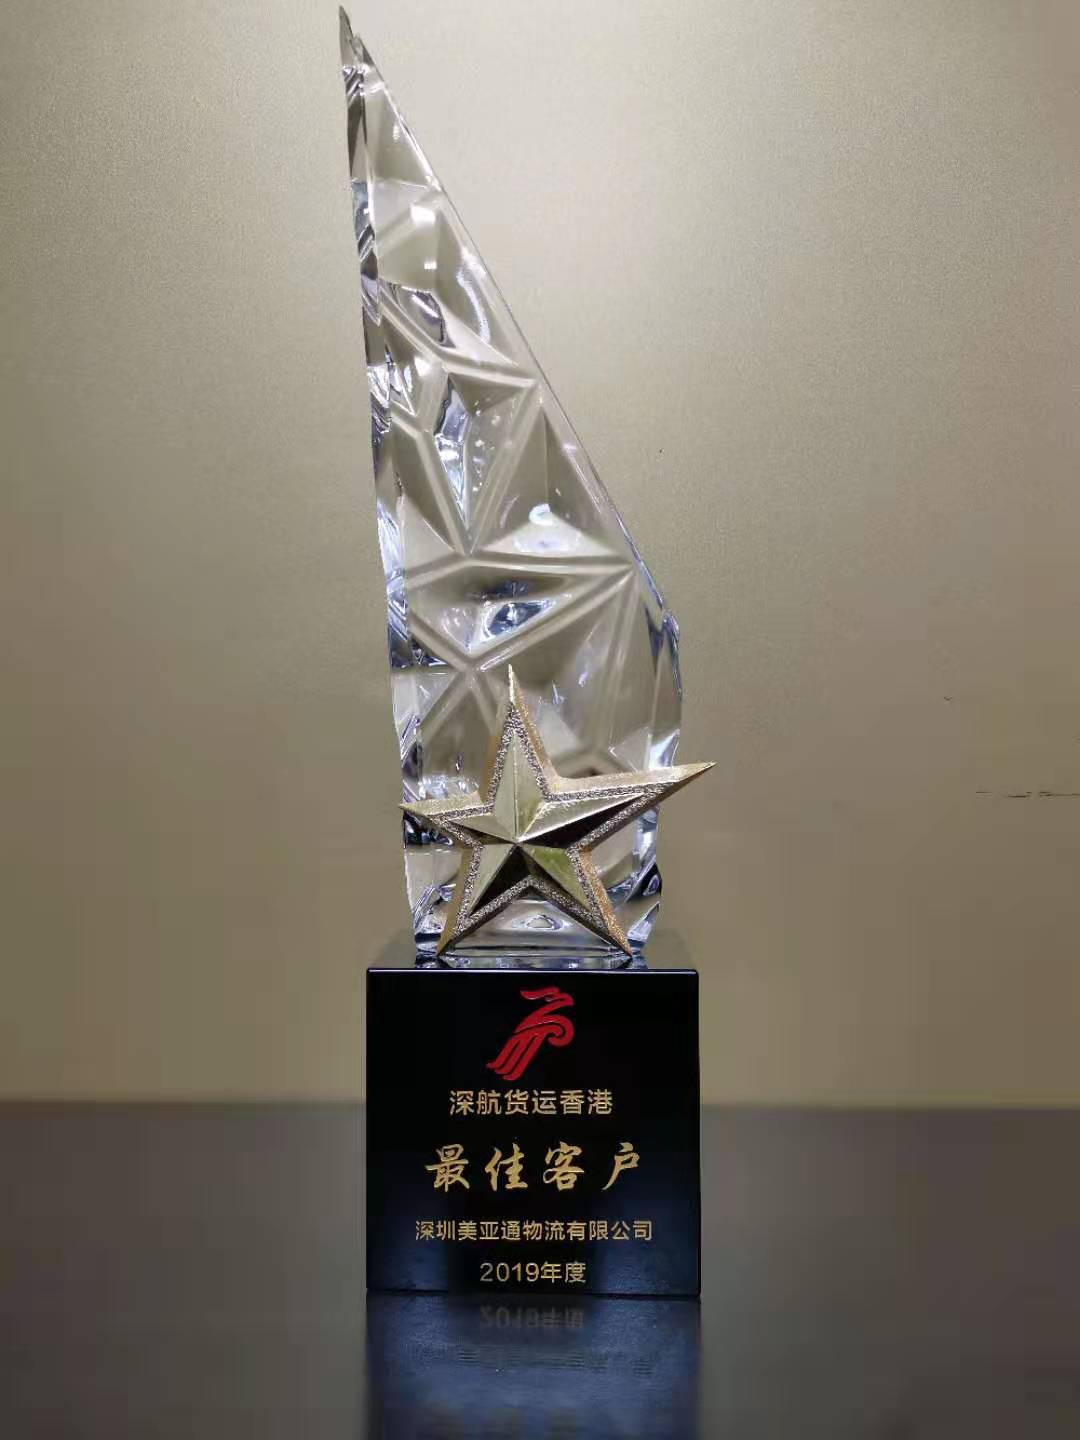 ZH Award 2019